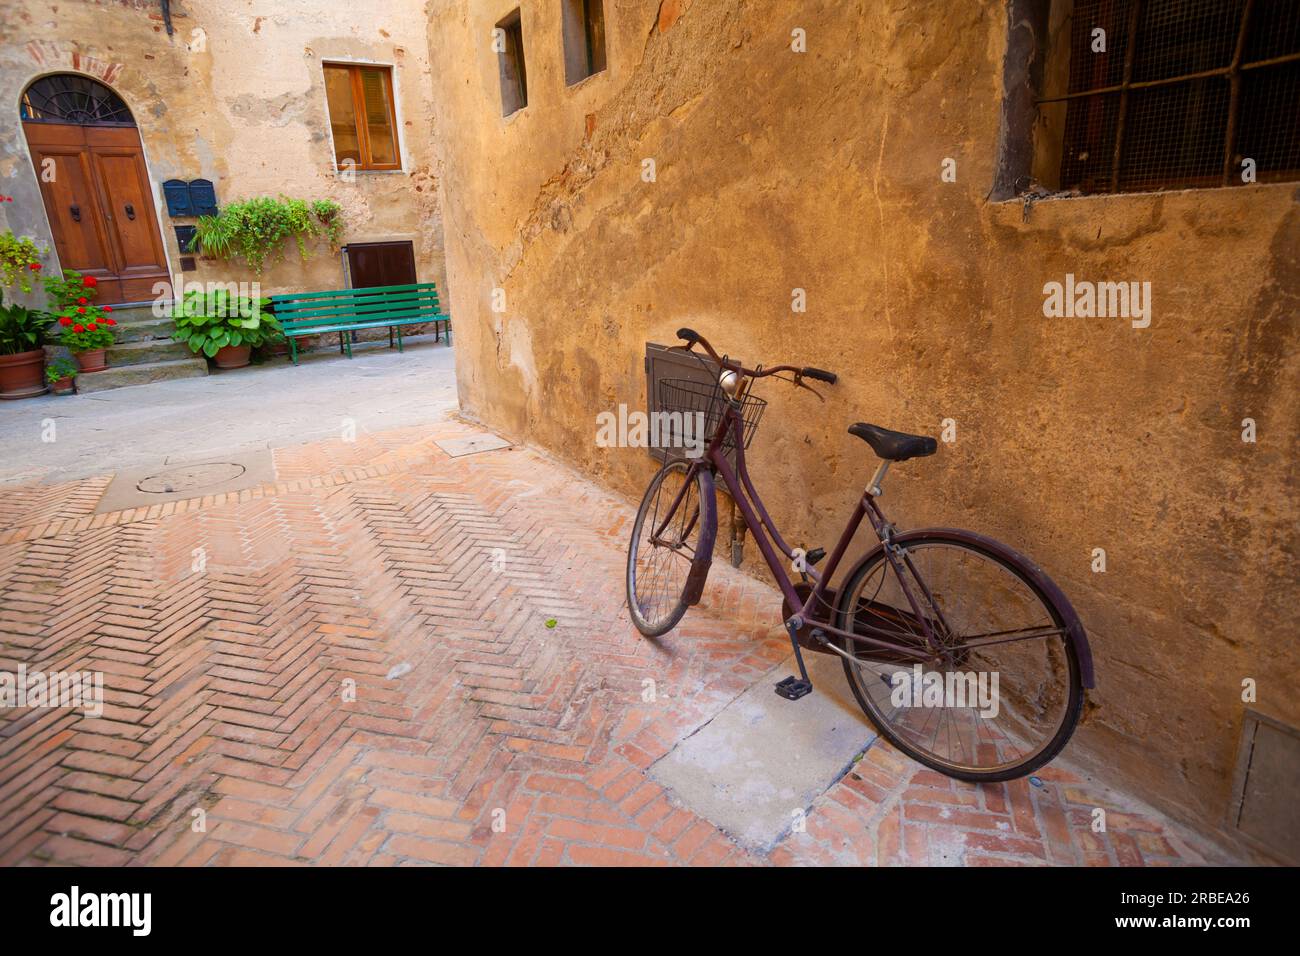 Pittoresca scena di Pienza: Bicicletta d'epoca, vecchia casa e atmosfera tranquilla. Foto Stock